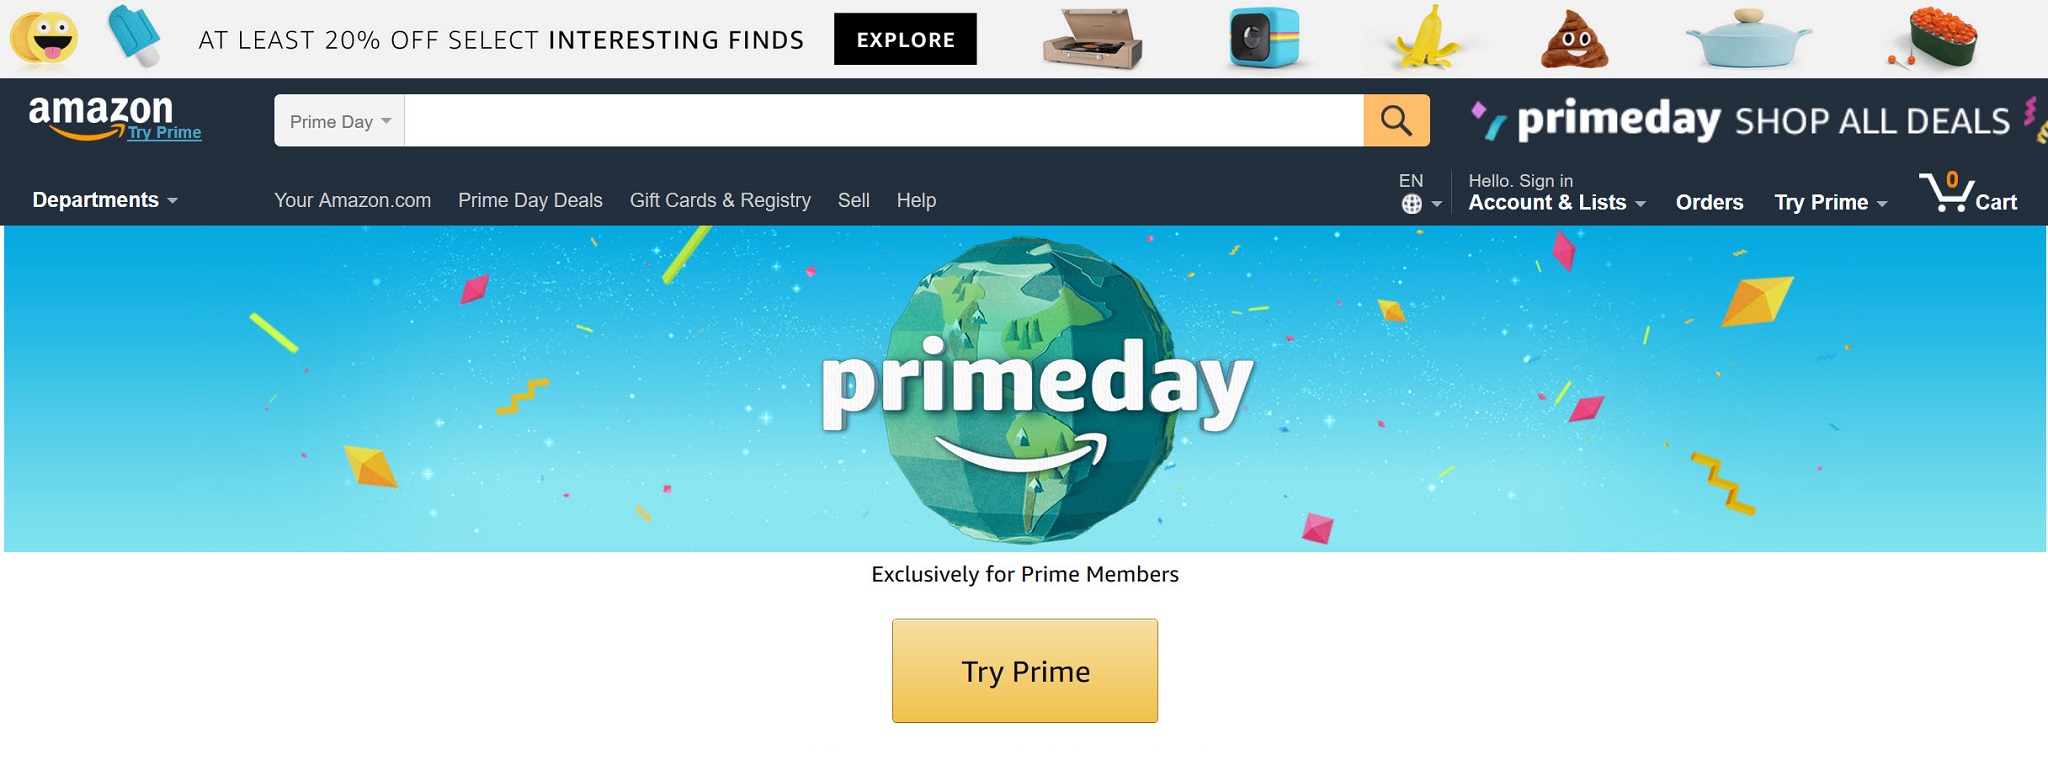 [Hôm nay] Amazon primeday: Khuyến mãi giảm giá ít nhất 20%, có món giảm tới 50%